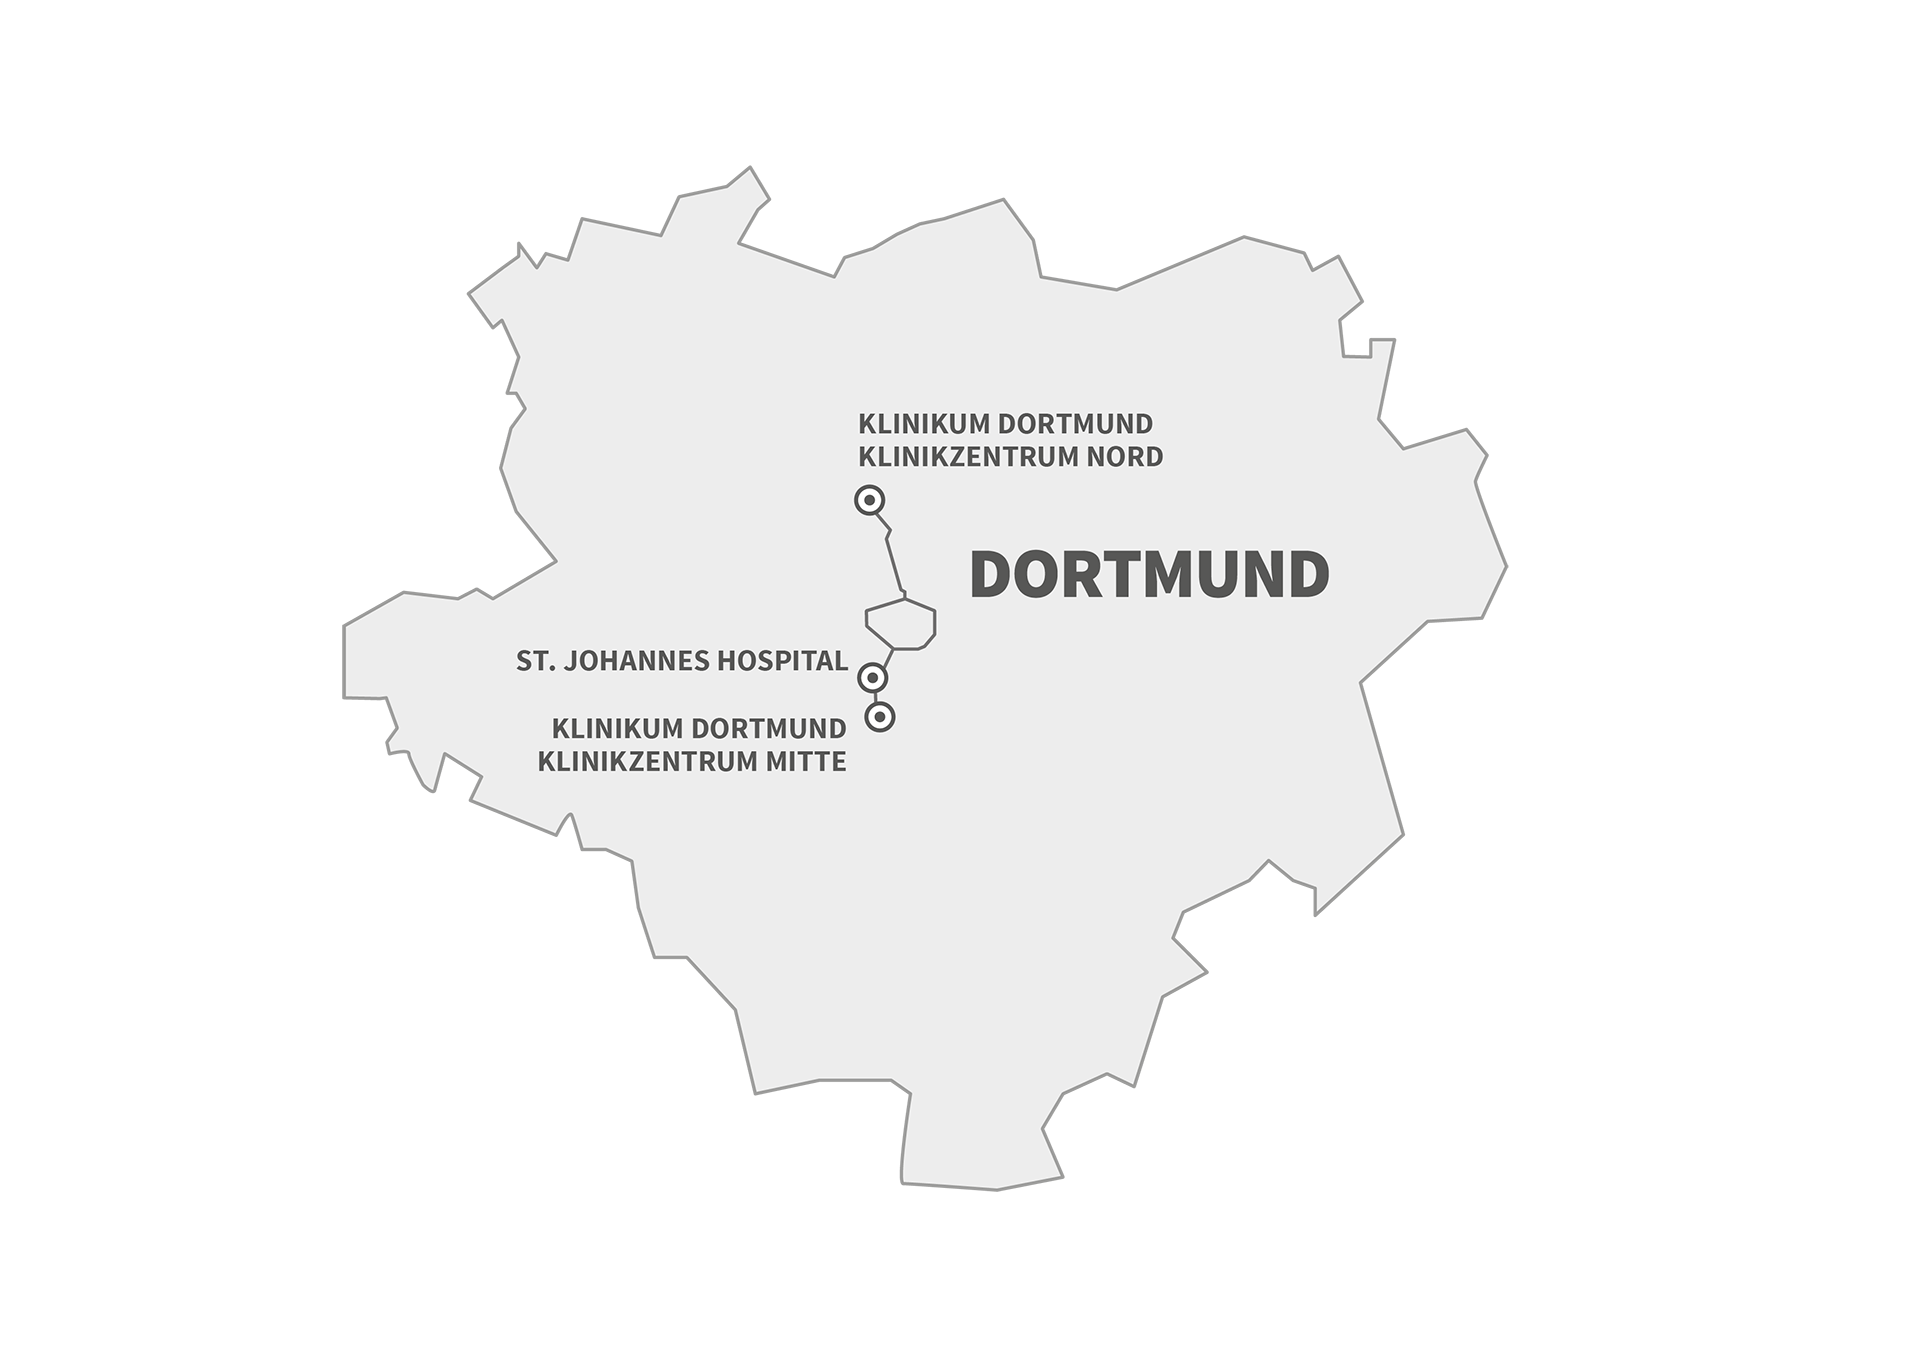 Das Bild zeigt die Umrisse von Dortmund als Map, auf der die drei Standorte der Kooperationspartner vom Lungenkrebszentrum eingezeichnet sind.